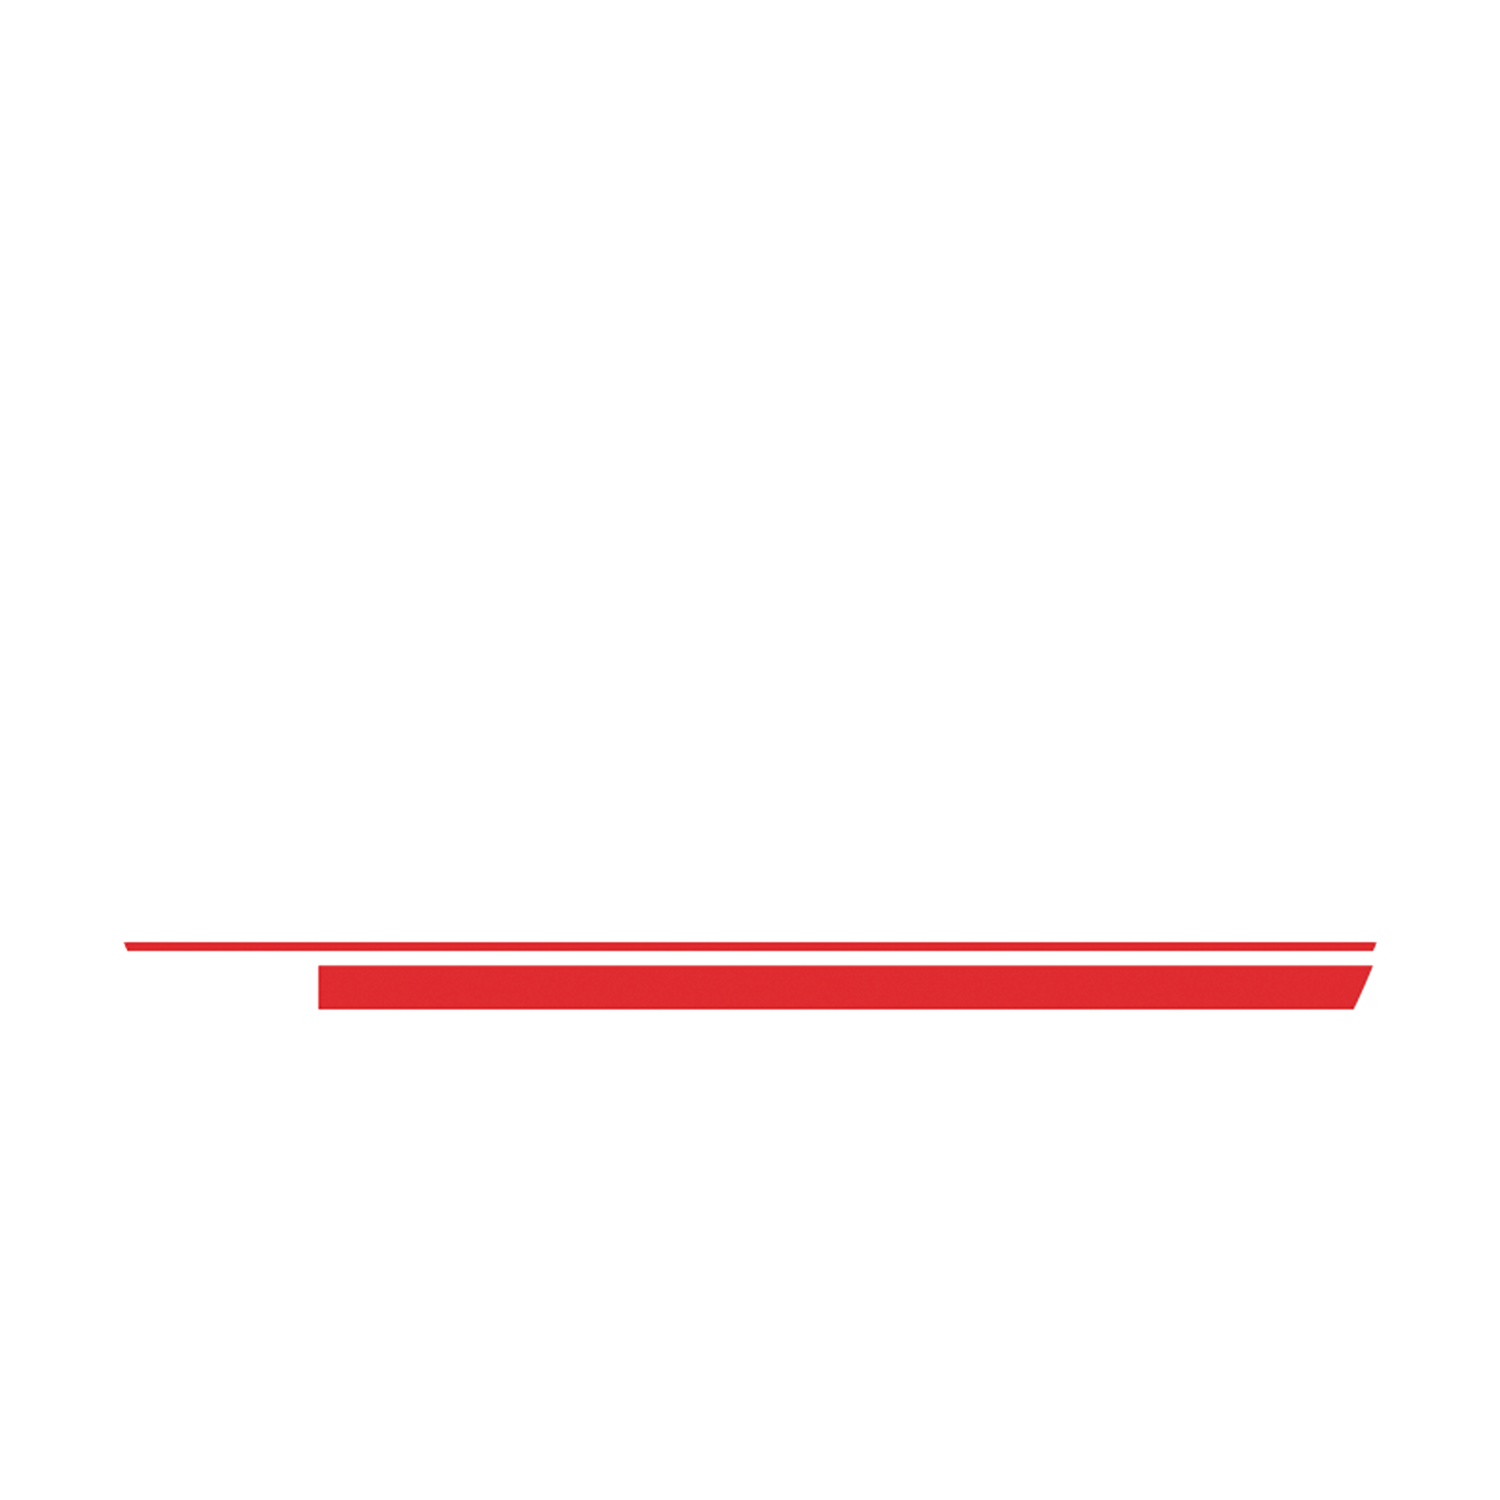 2-Tone Entertainment